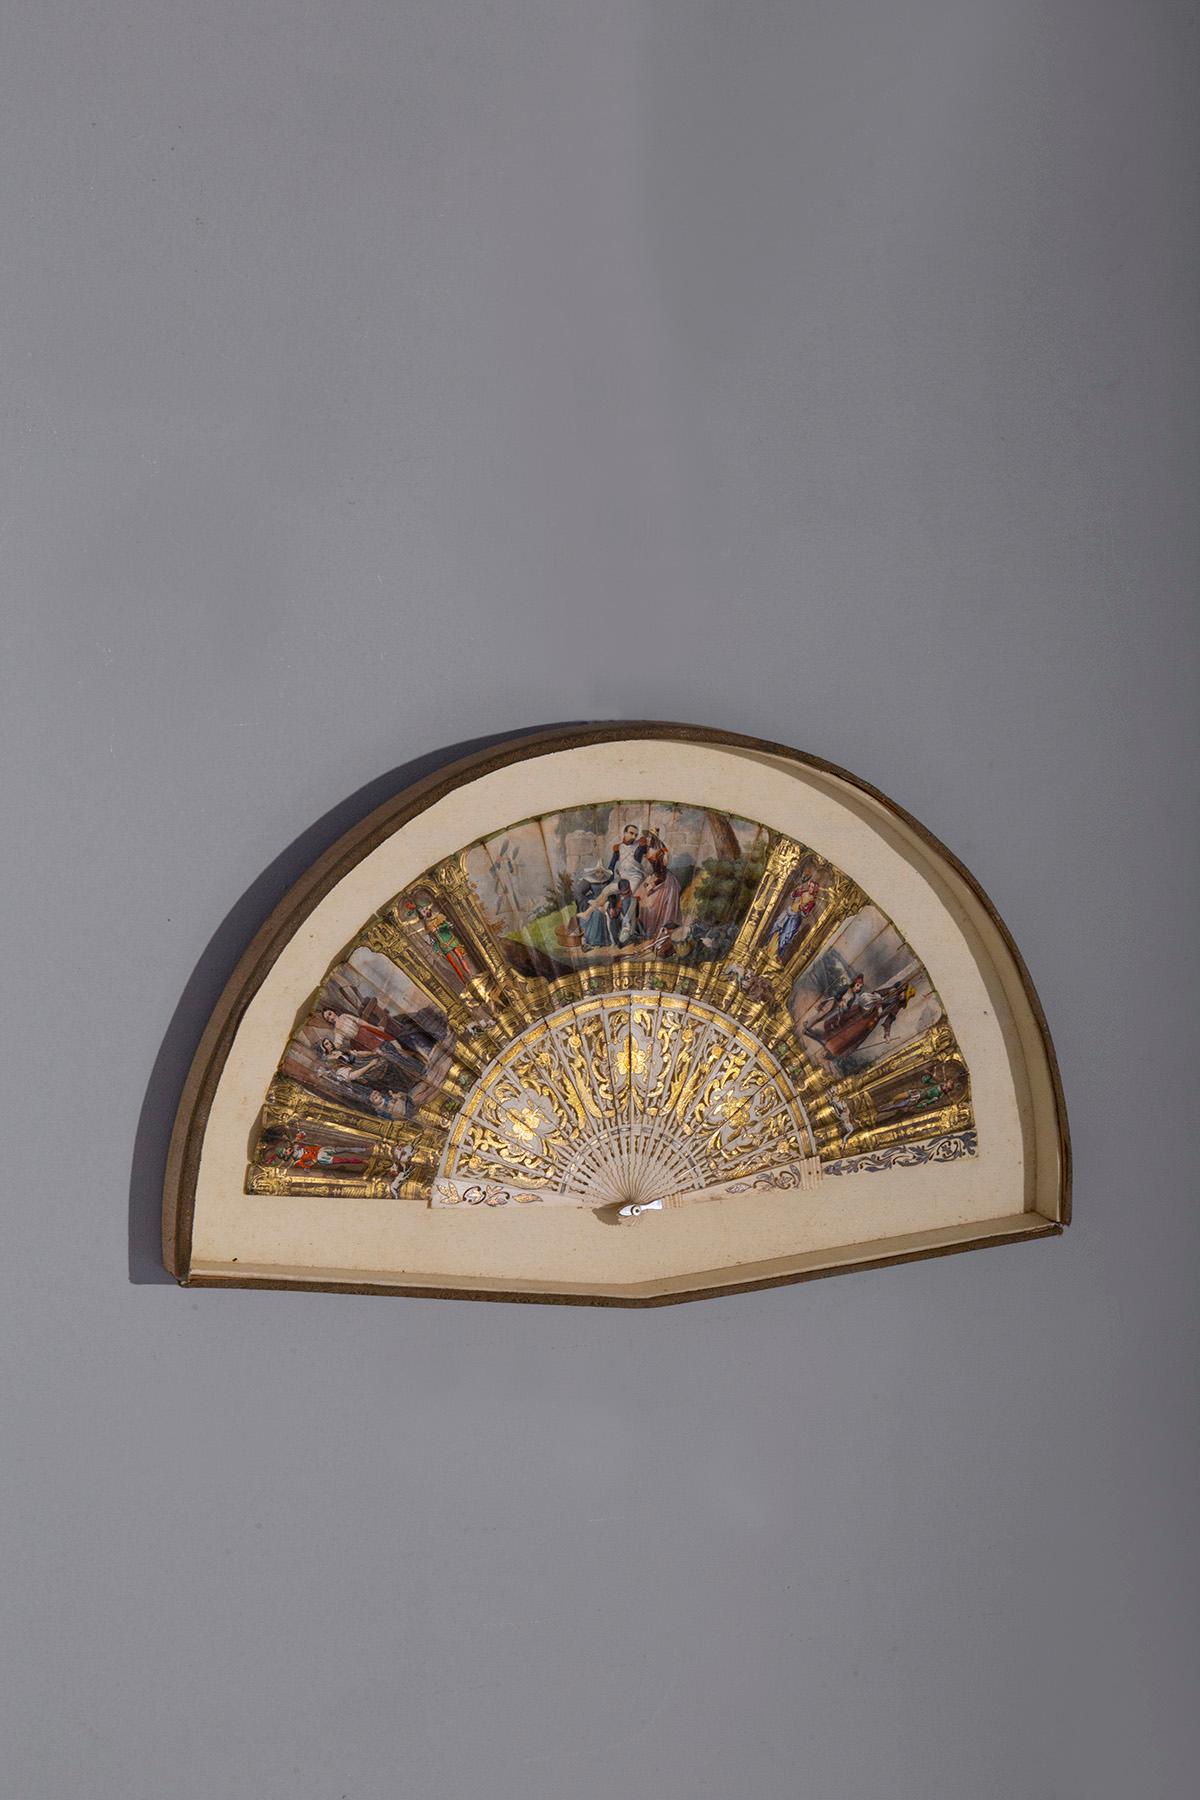 Der italienische Seidenfächer in einer Vitrine aus den späten 1800er Jahren ist ein wahres Meisterwerk an Handwerkskunst und Eleganz. Dieser antike Fächer ist in einem schönen Legierungsgehäuse untergebracht und wird in seiner ganzen Pracht für die